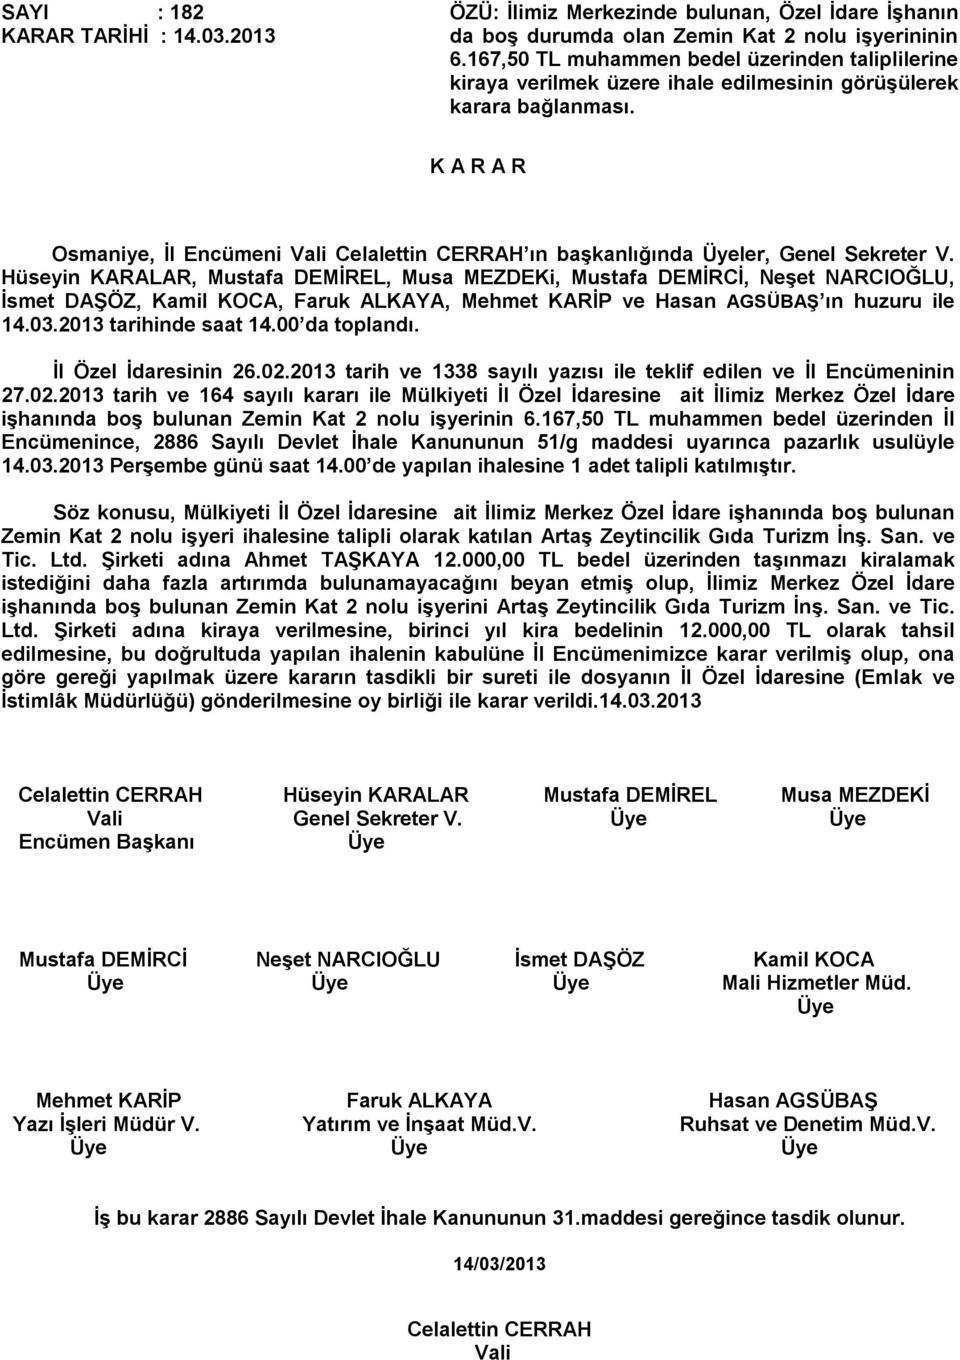 Osmaniye, İl Encümeni Vali Celalettin CERRAH ın başkanlığında ler, Genel Sekreter V. 14.03.2013 tarihinde saat 14.00 da toplandı. İl Özel İdaresinin 26.02.